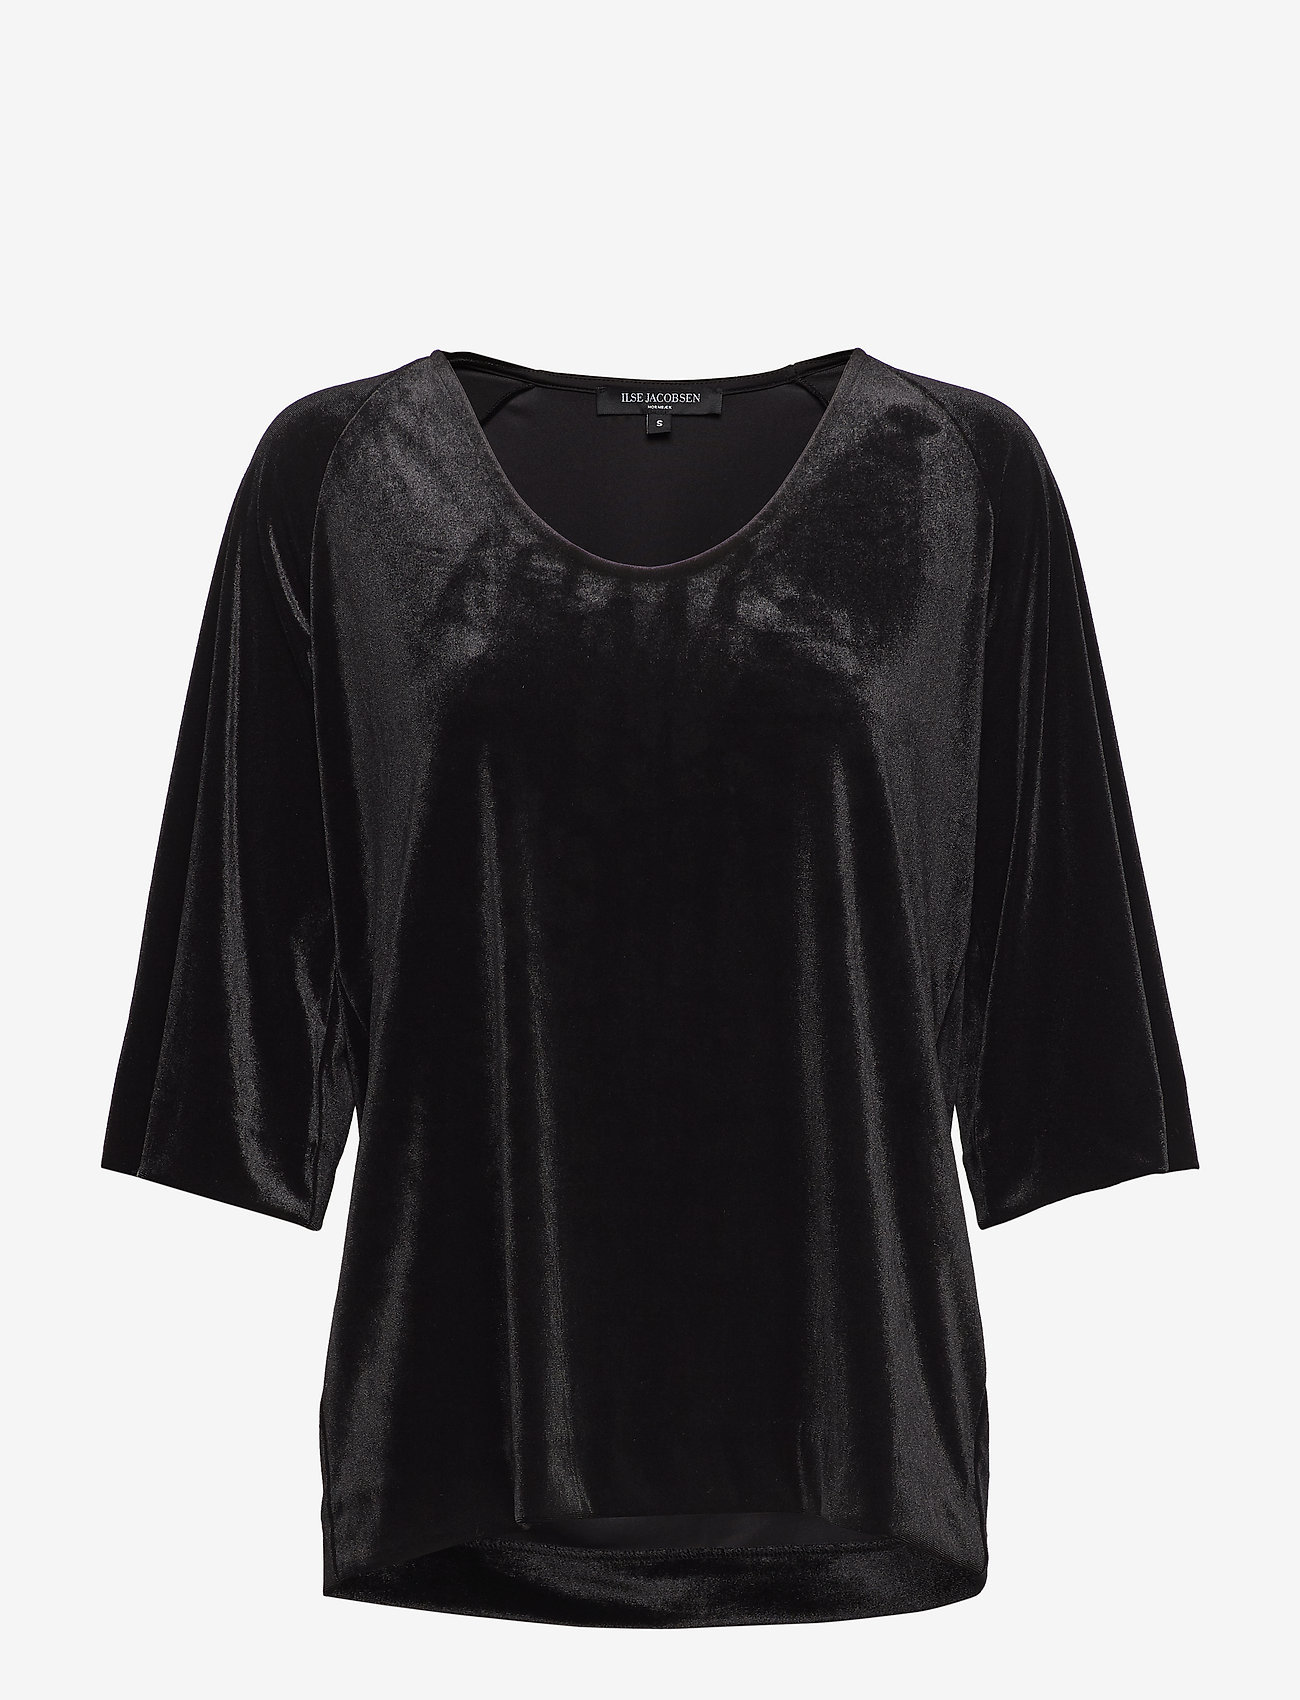 Ilse Jacobsen Blouse (Black), 364 kr Stort udvalg af designer mærker | Booztlet.com